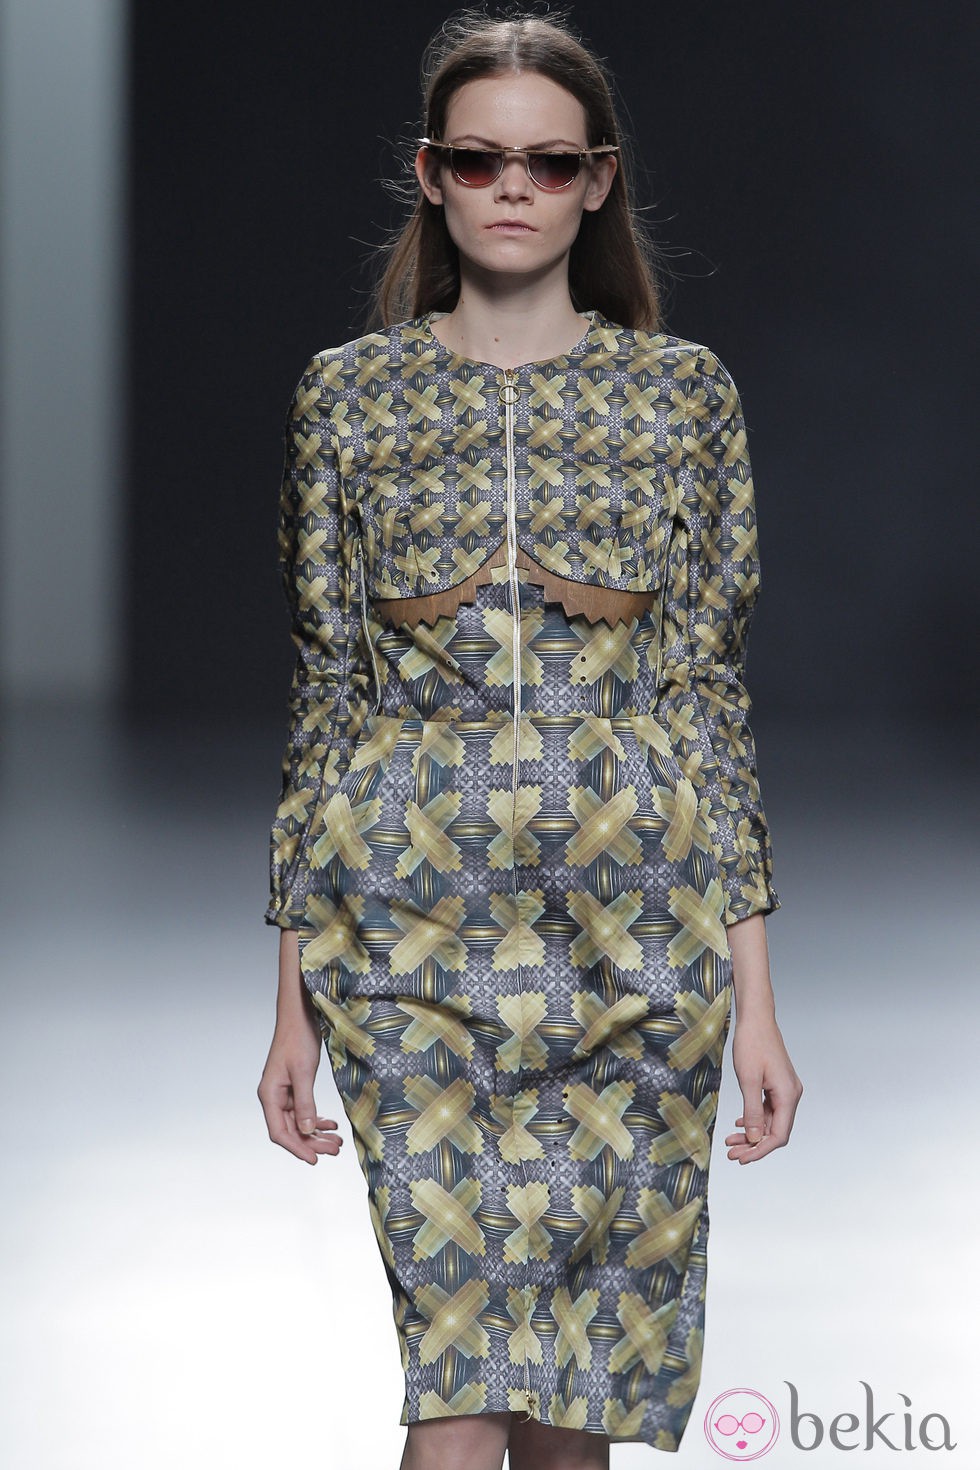 Vestido de estampados geométricos de la colección otoño/invierno 2013/2014 de Martín Lamothe en Madrid Fashion Week